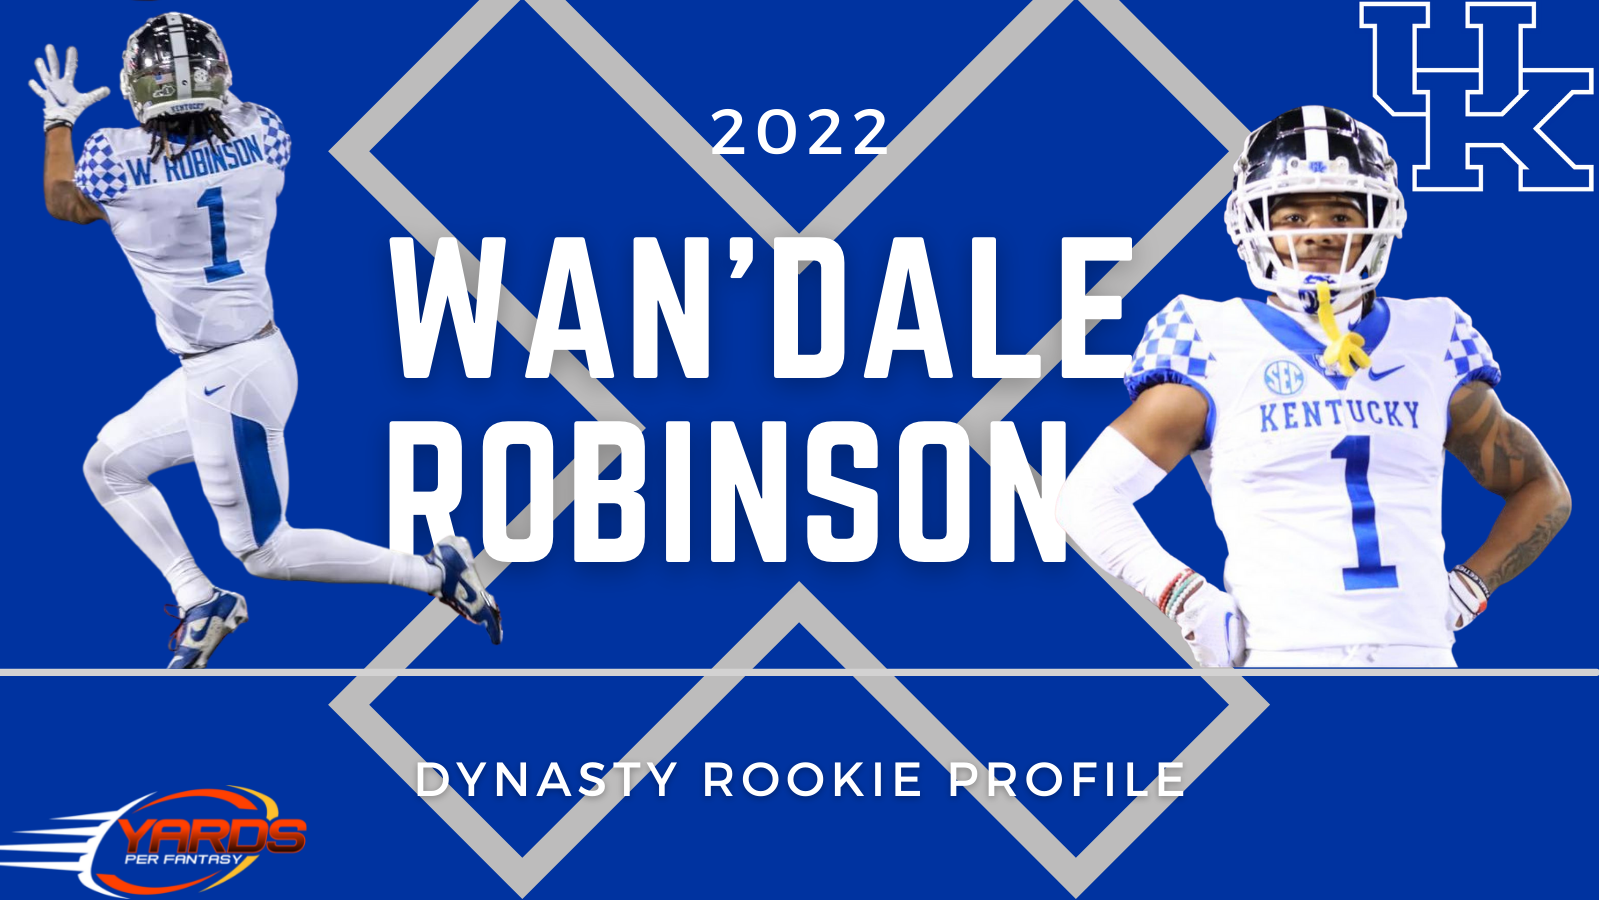 Wan'Dale Robinson: 2022 Dynasty Rookie Profile - Yards Per Fantasy